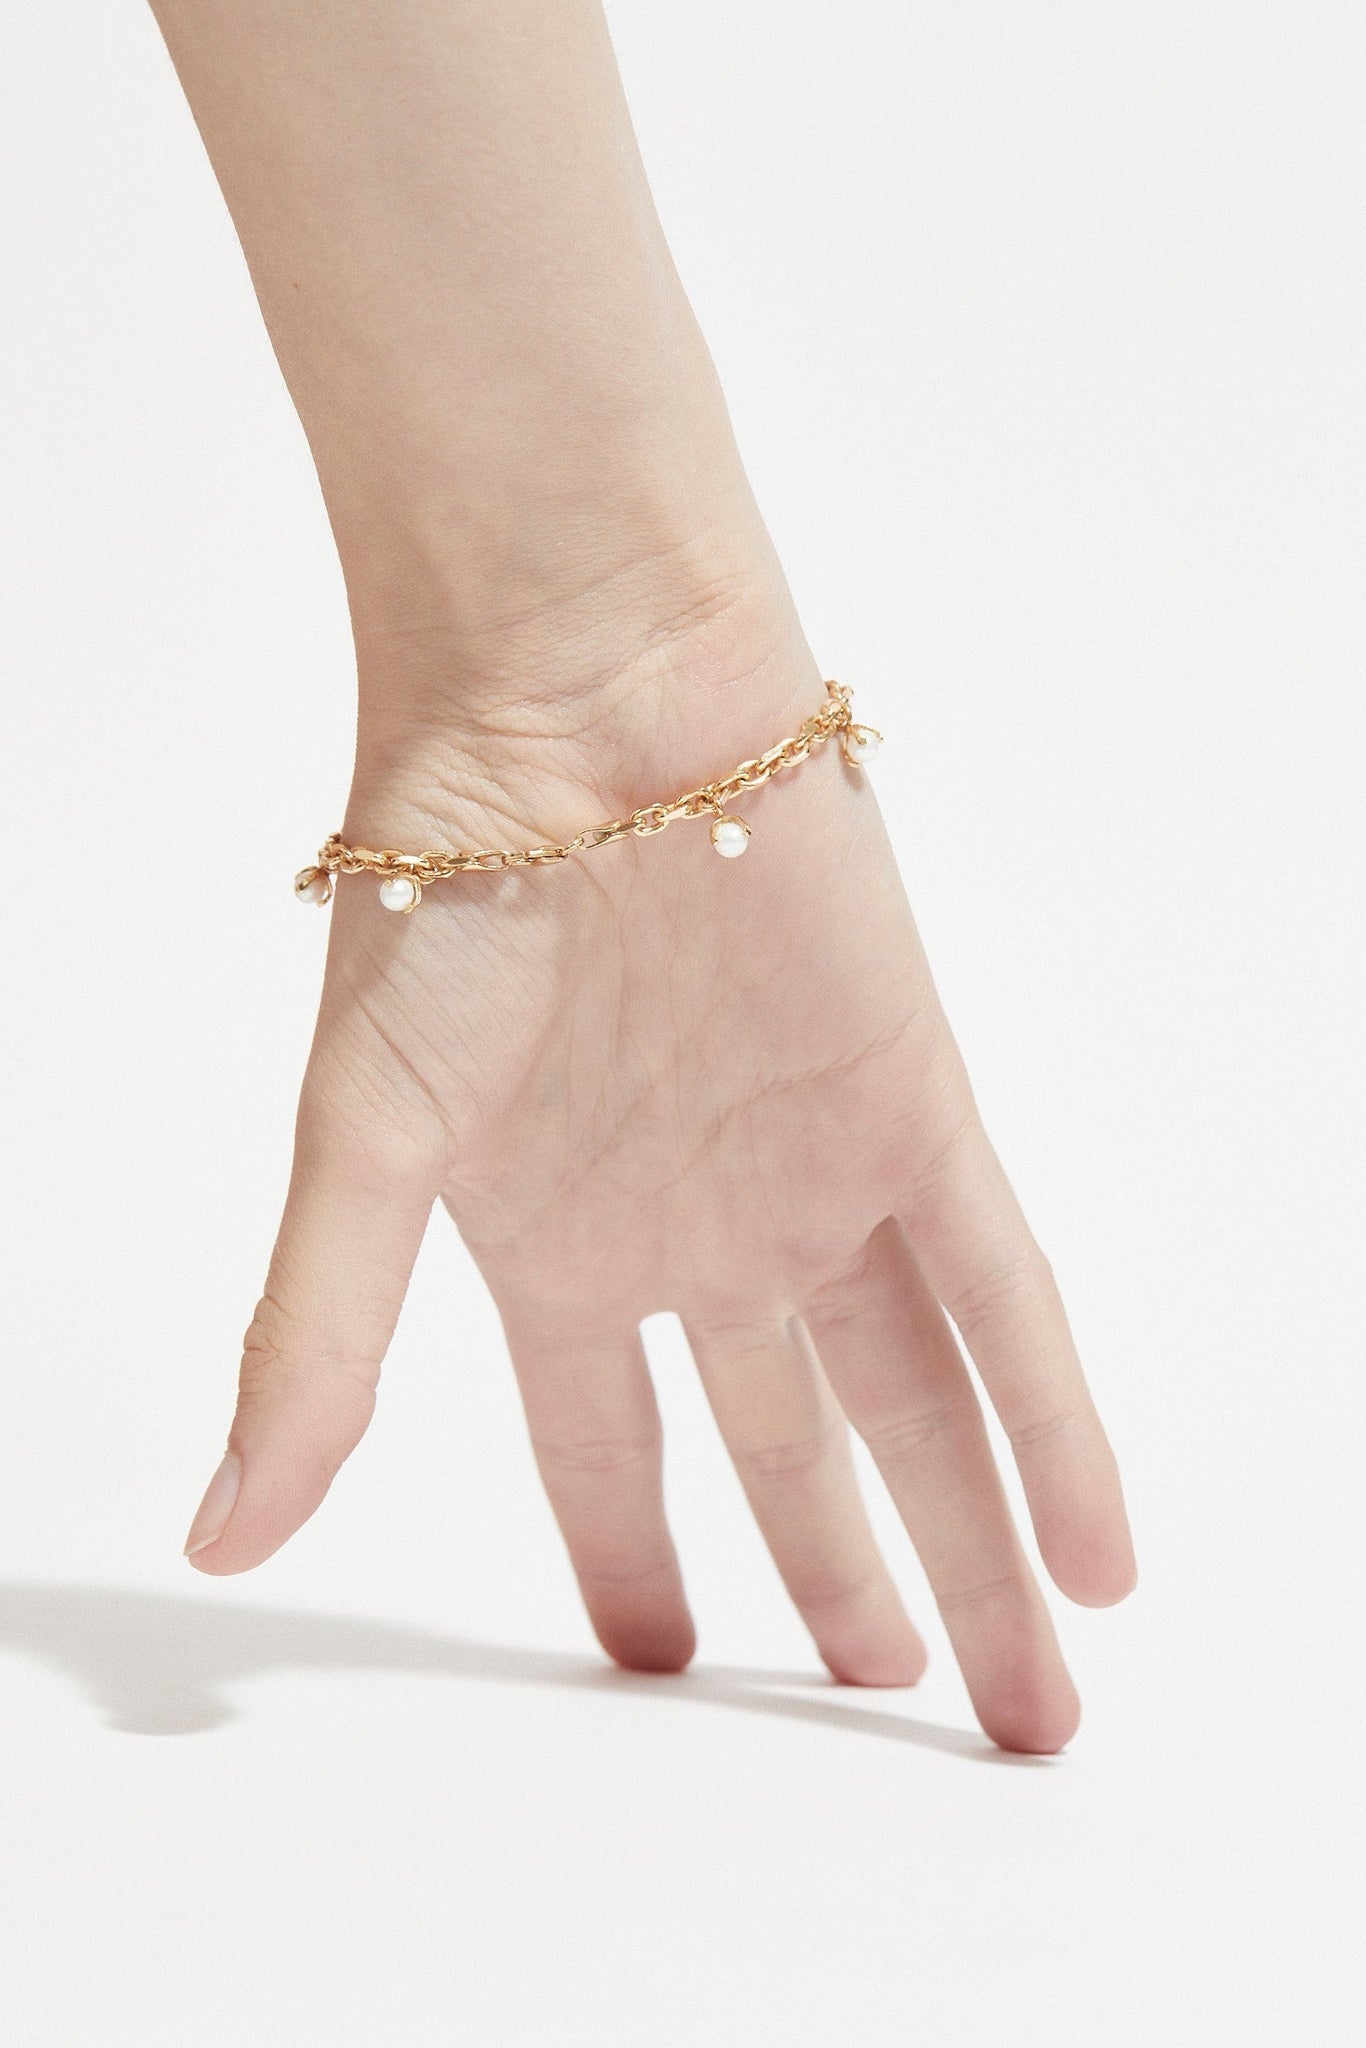 Pearled Bracelet - Cornelia Webb - 6